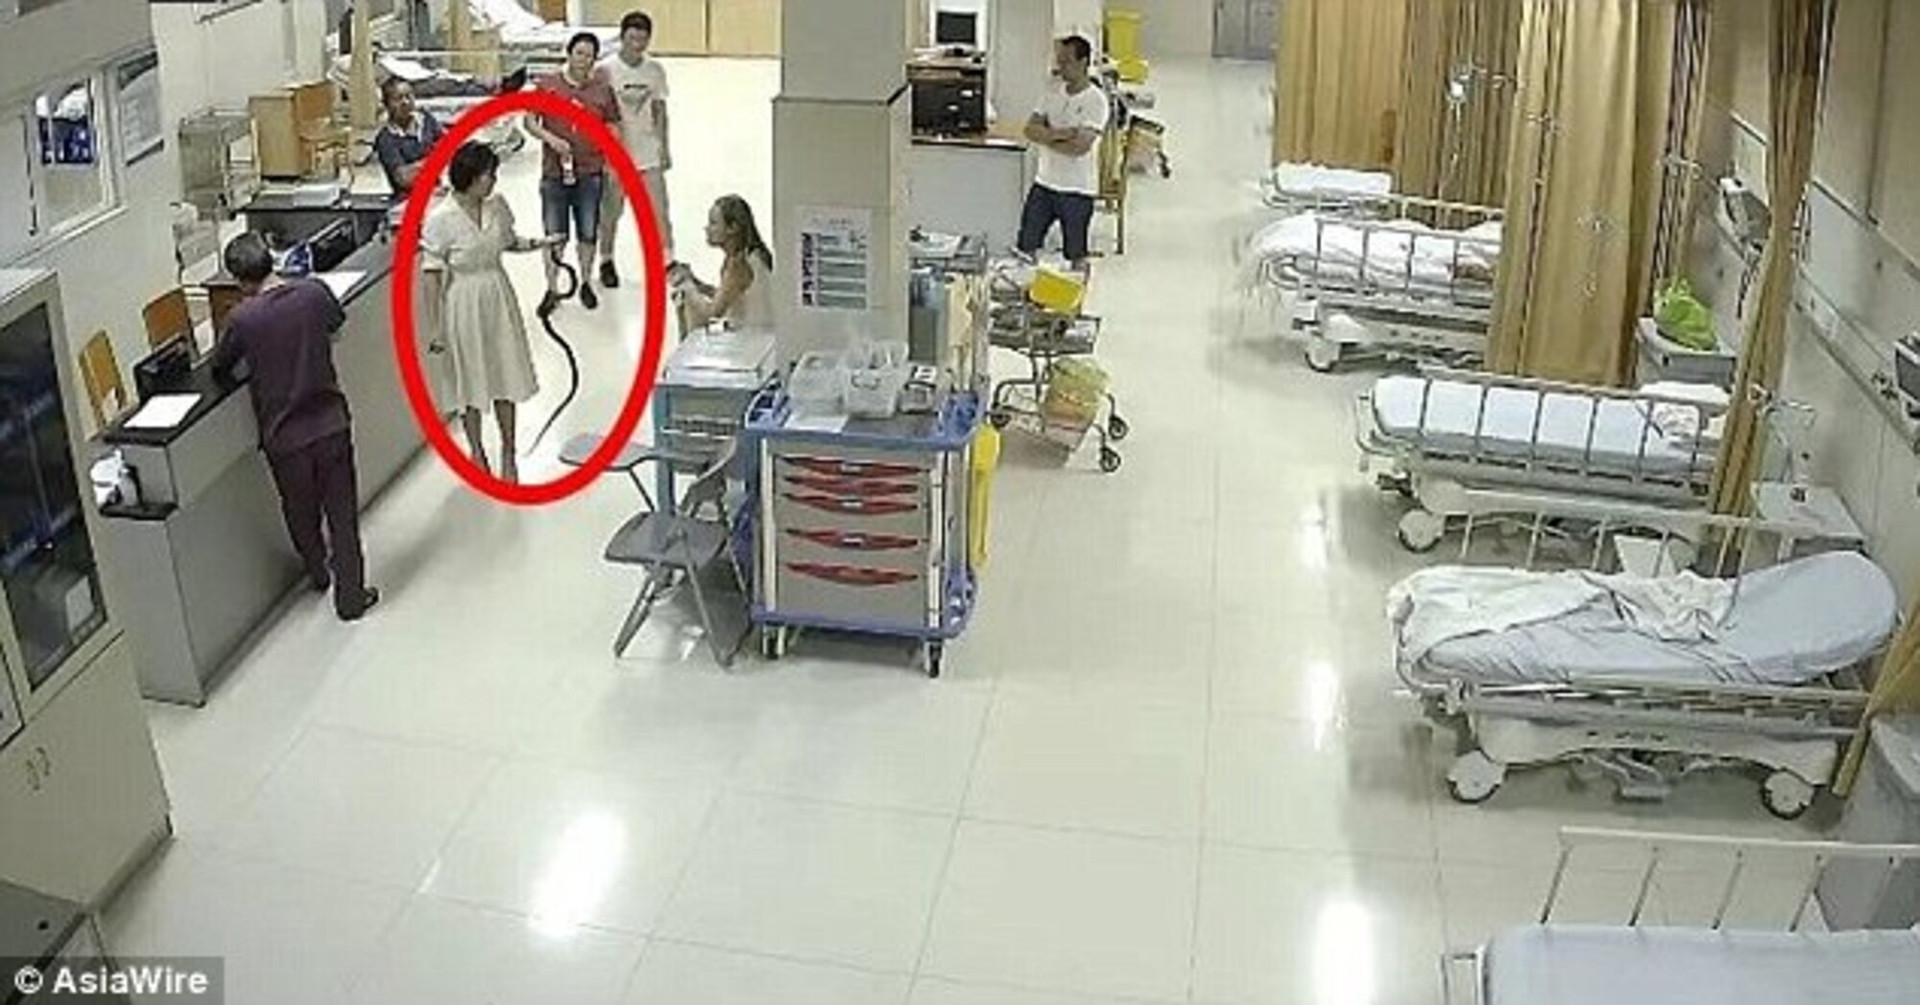 Xanh mặt chứng kiến cô gái điềm tĩnh cầm rắn sống bước vào phòng cấp cứu - 1